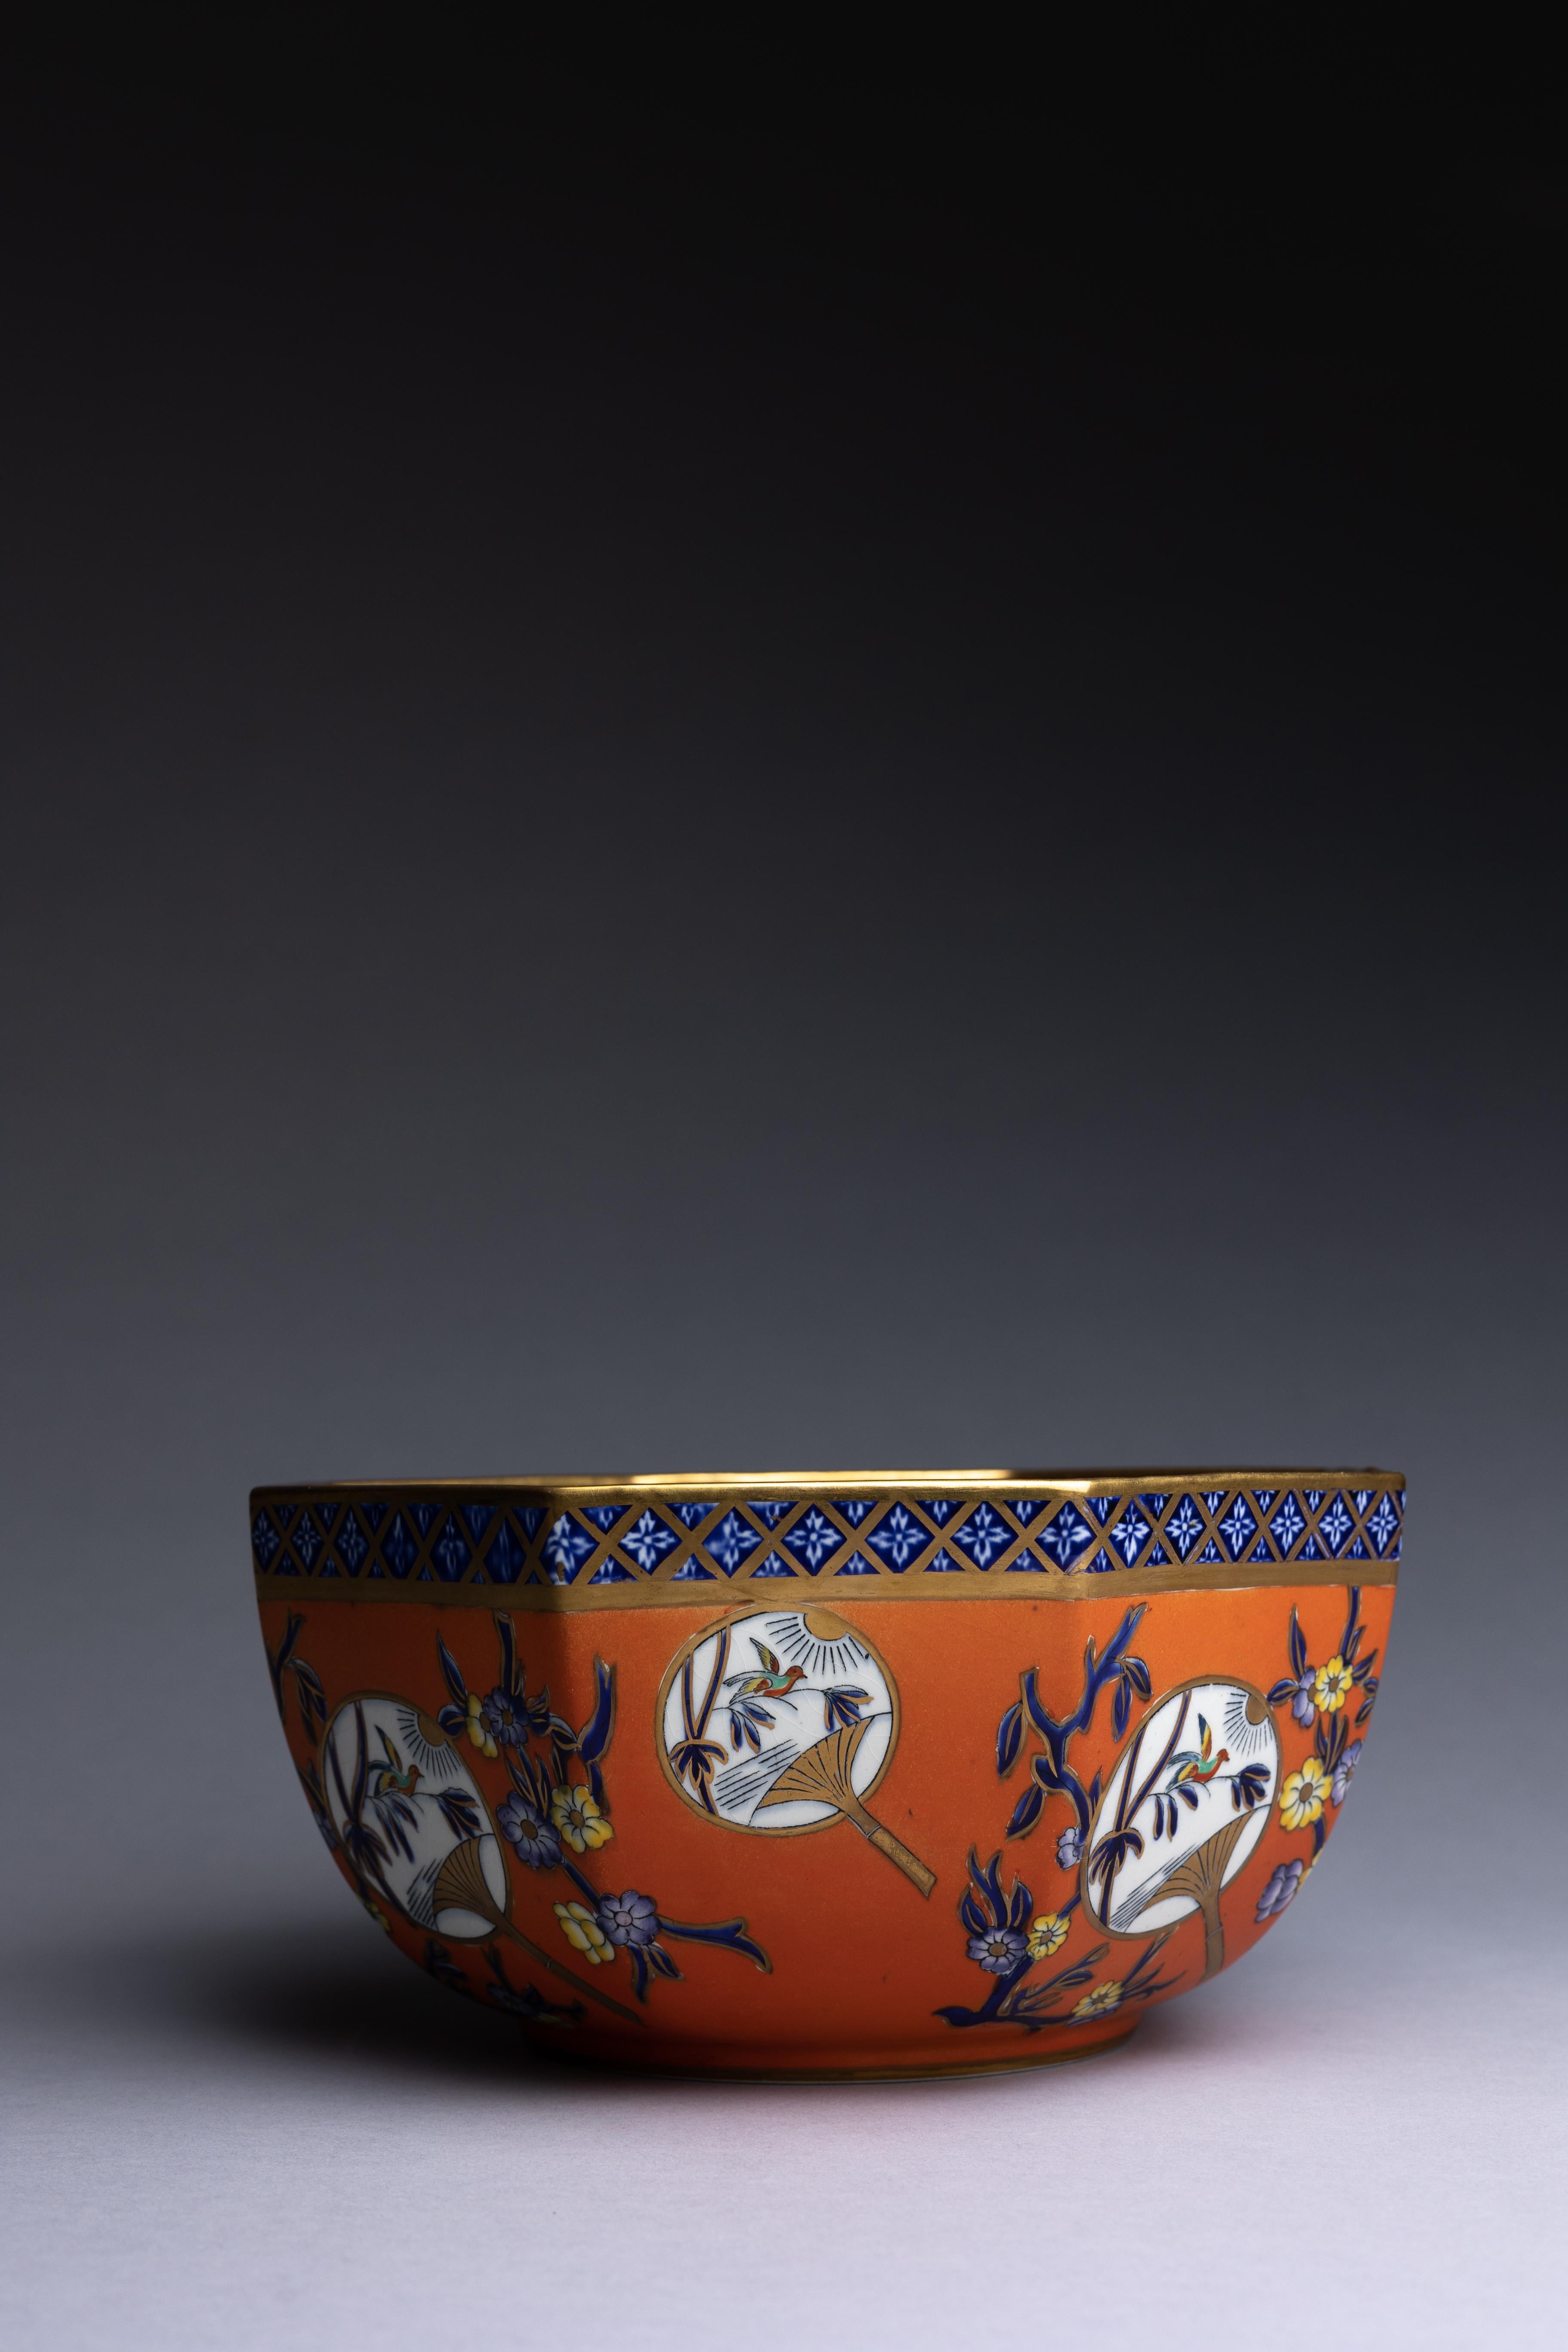 Eine achteckige Eisensteinschale von Mason's Ashworth, verziert mit einer lebhaften orangefarbenen Glasur und zarten Chinoiserie-Details.

Das Design ist im Transferdruck in Unter- und Überglasurblau mit einem Muster aus Vögeln und chinesischen